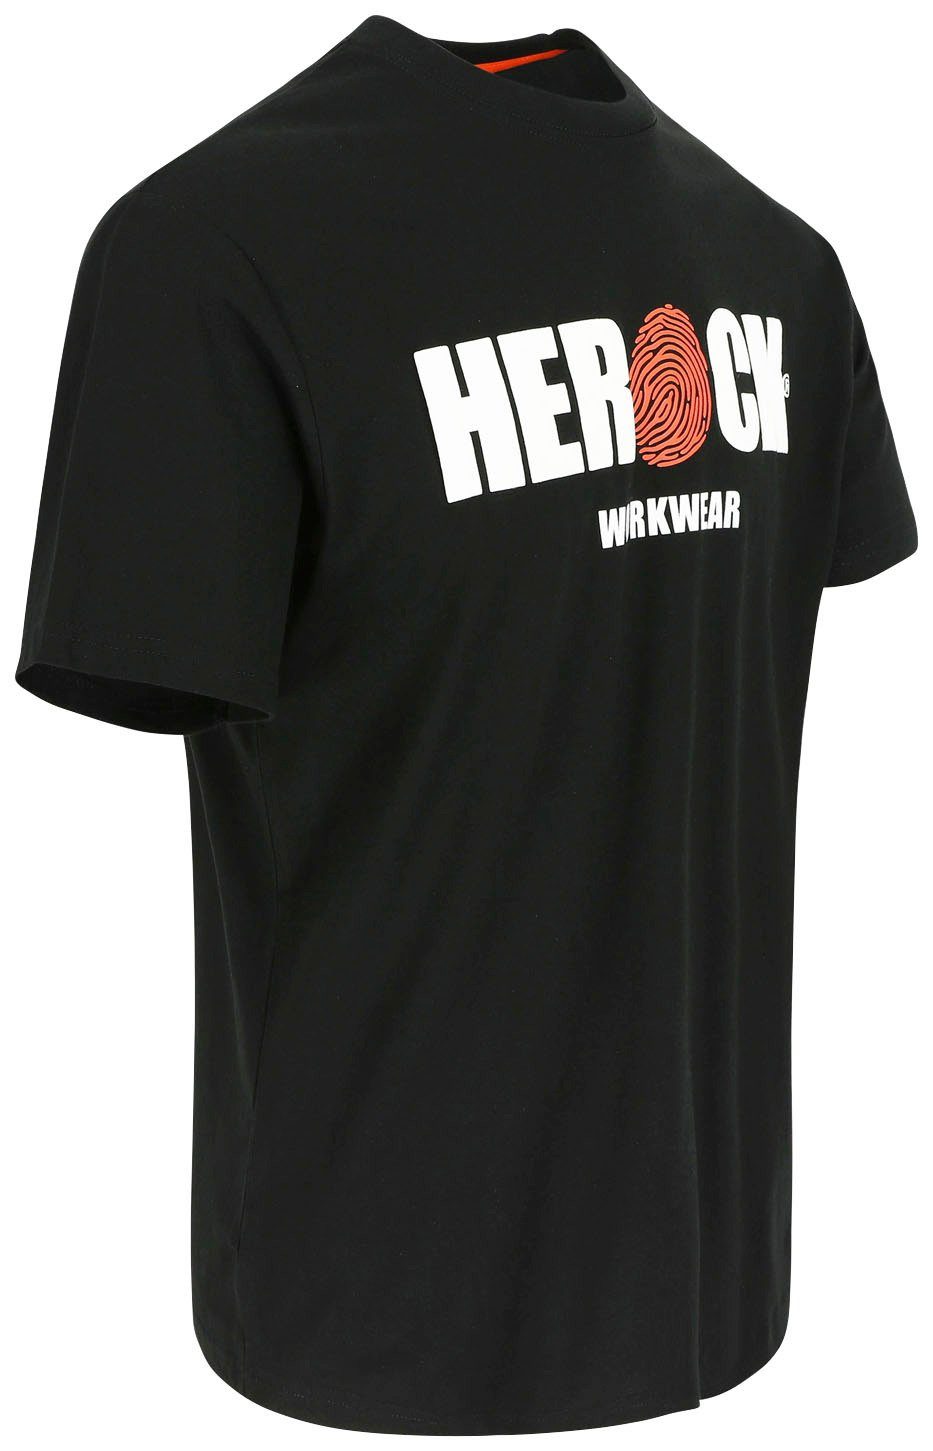 Herock T-Shirt ENI Baumwolle, mit Herock®-Aufdruck, Tragegefühl Rundhals, schwarz angenehmes